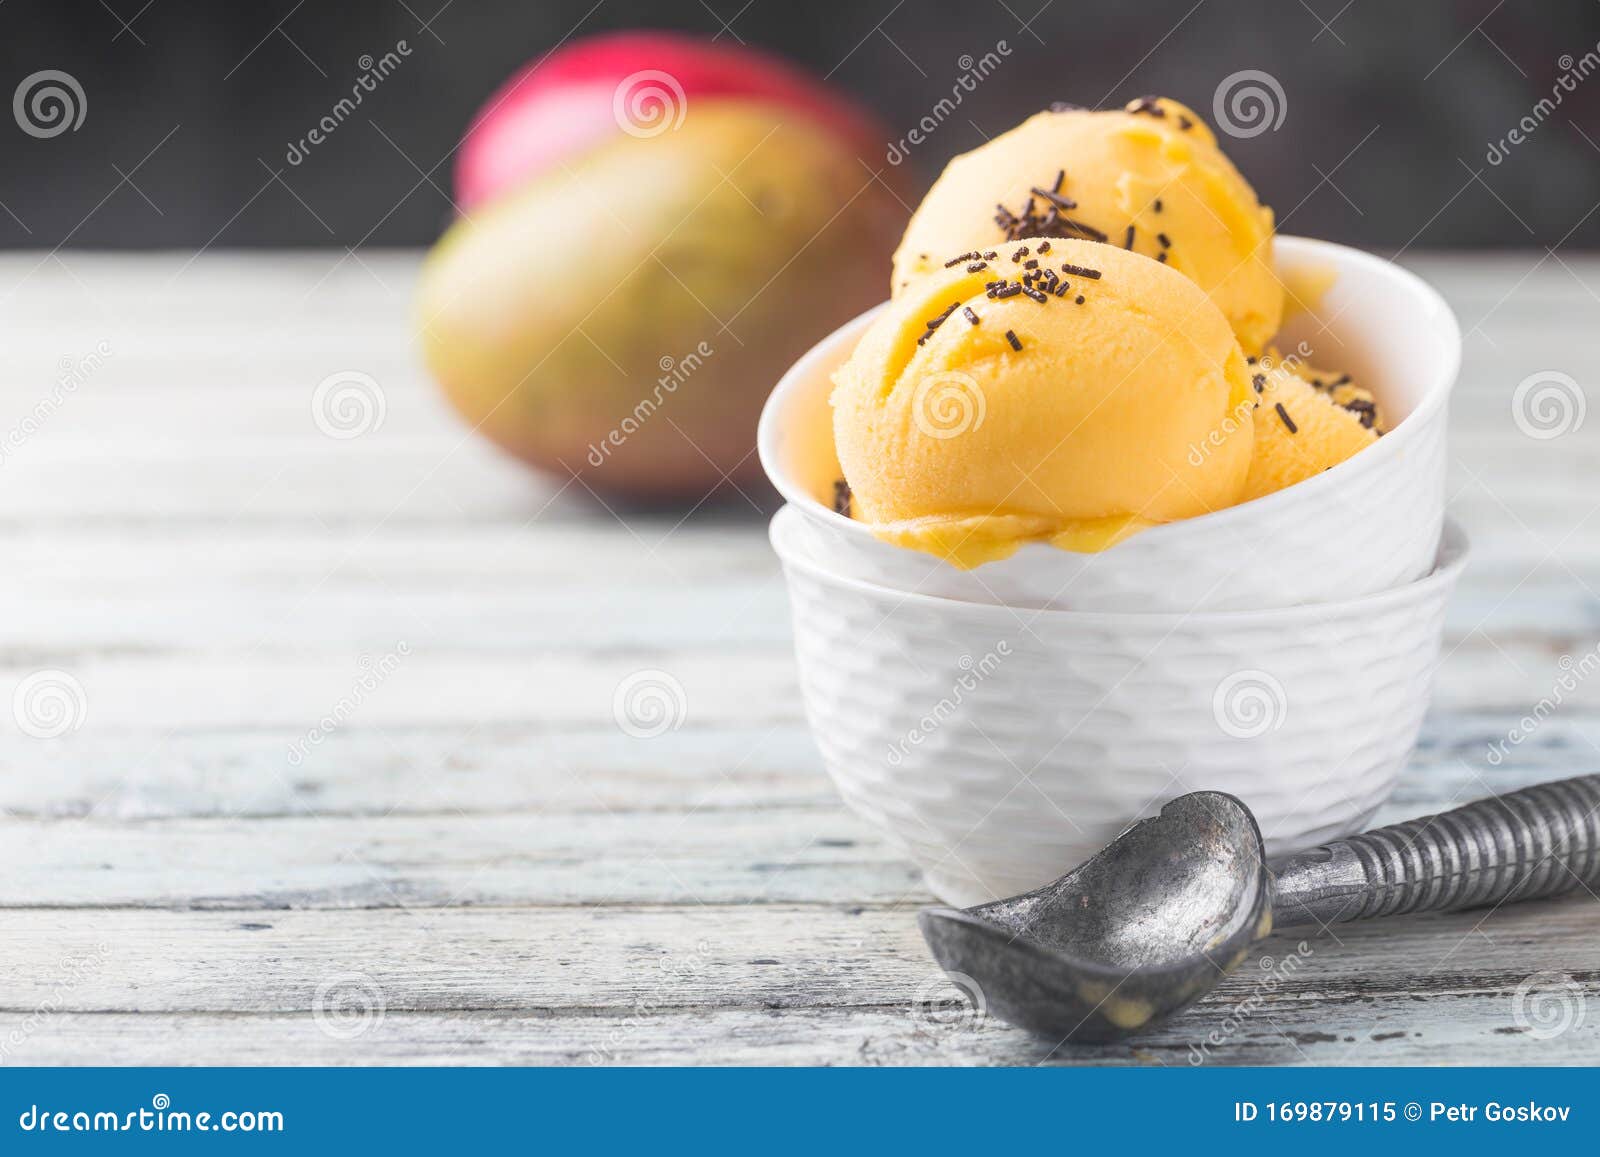 自制芒果冰淇淋,自制芒果冰淇淋的家常做法 - 美食杰自制芒果冰淇淋做法大全